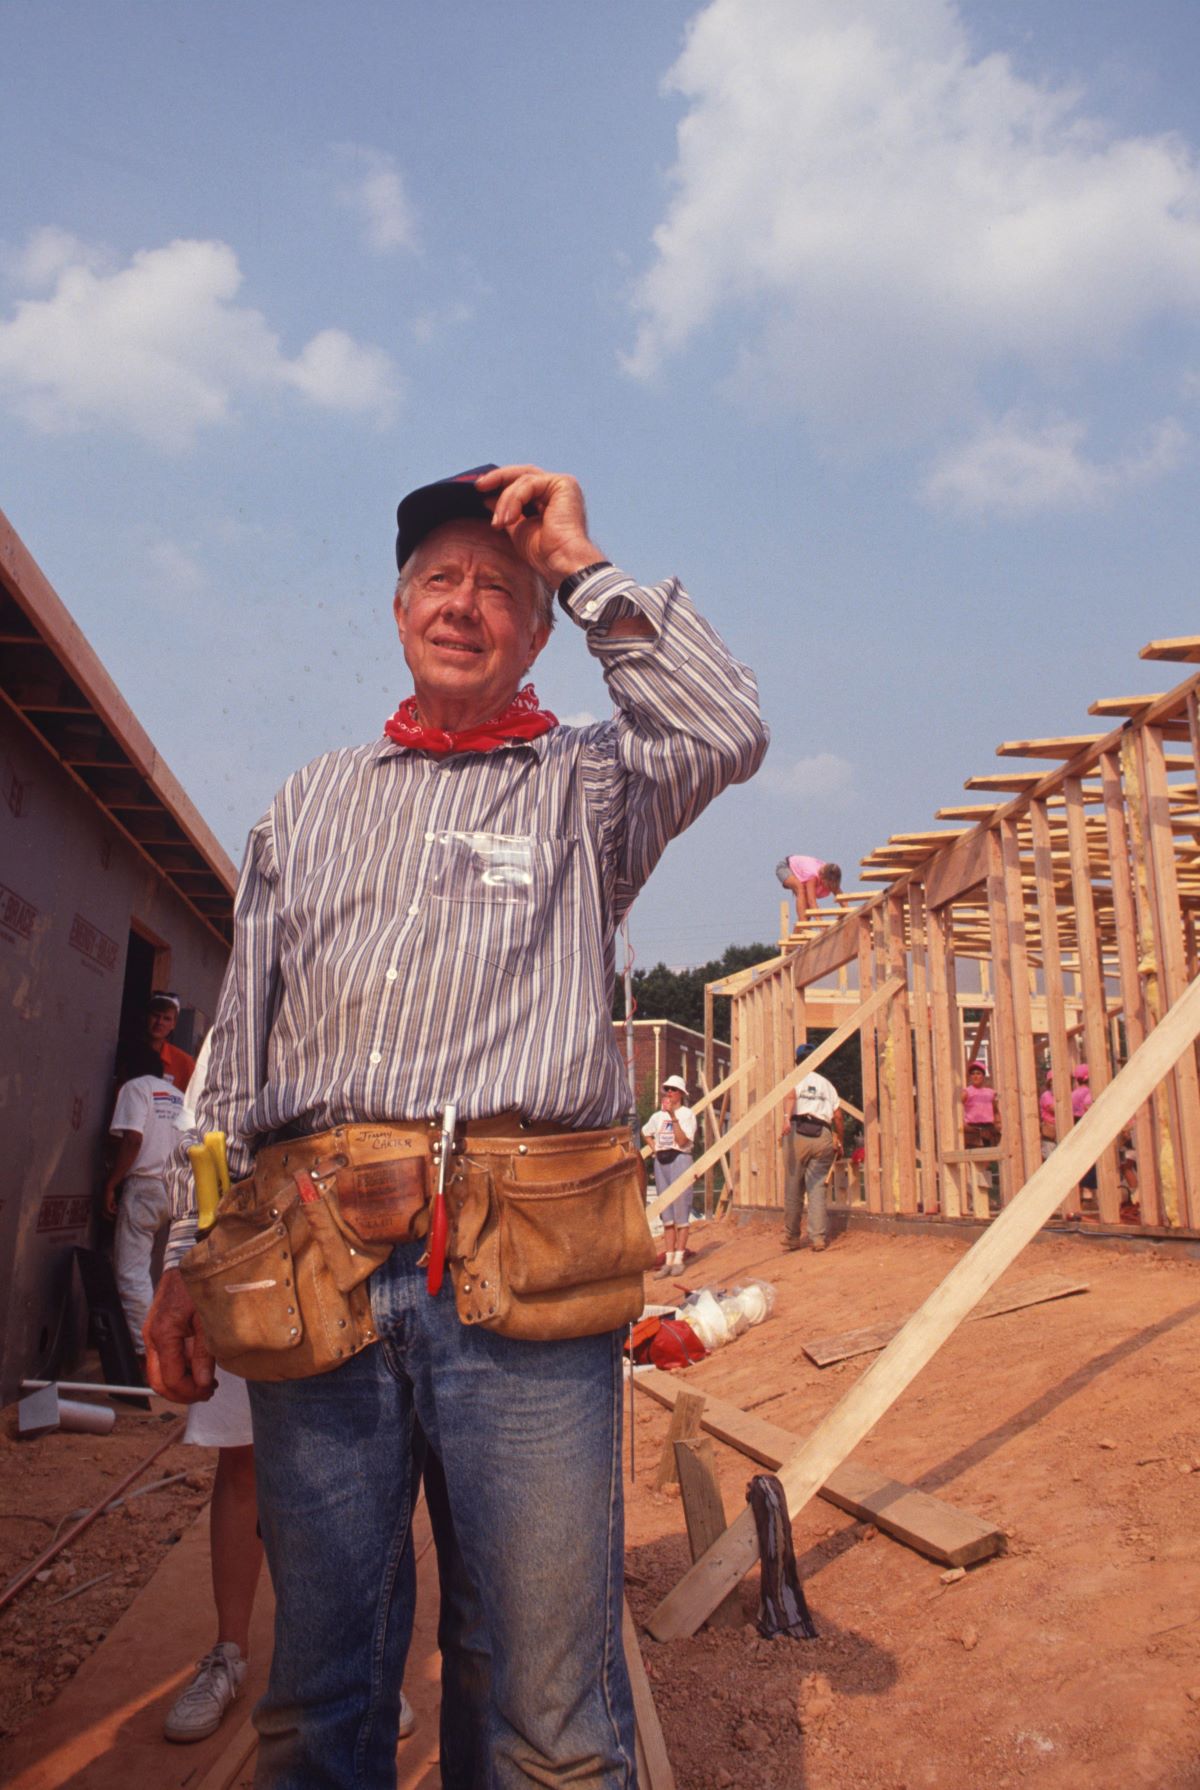 Former President Jimmy Carter, Habitat For Humanity